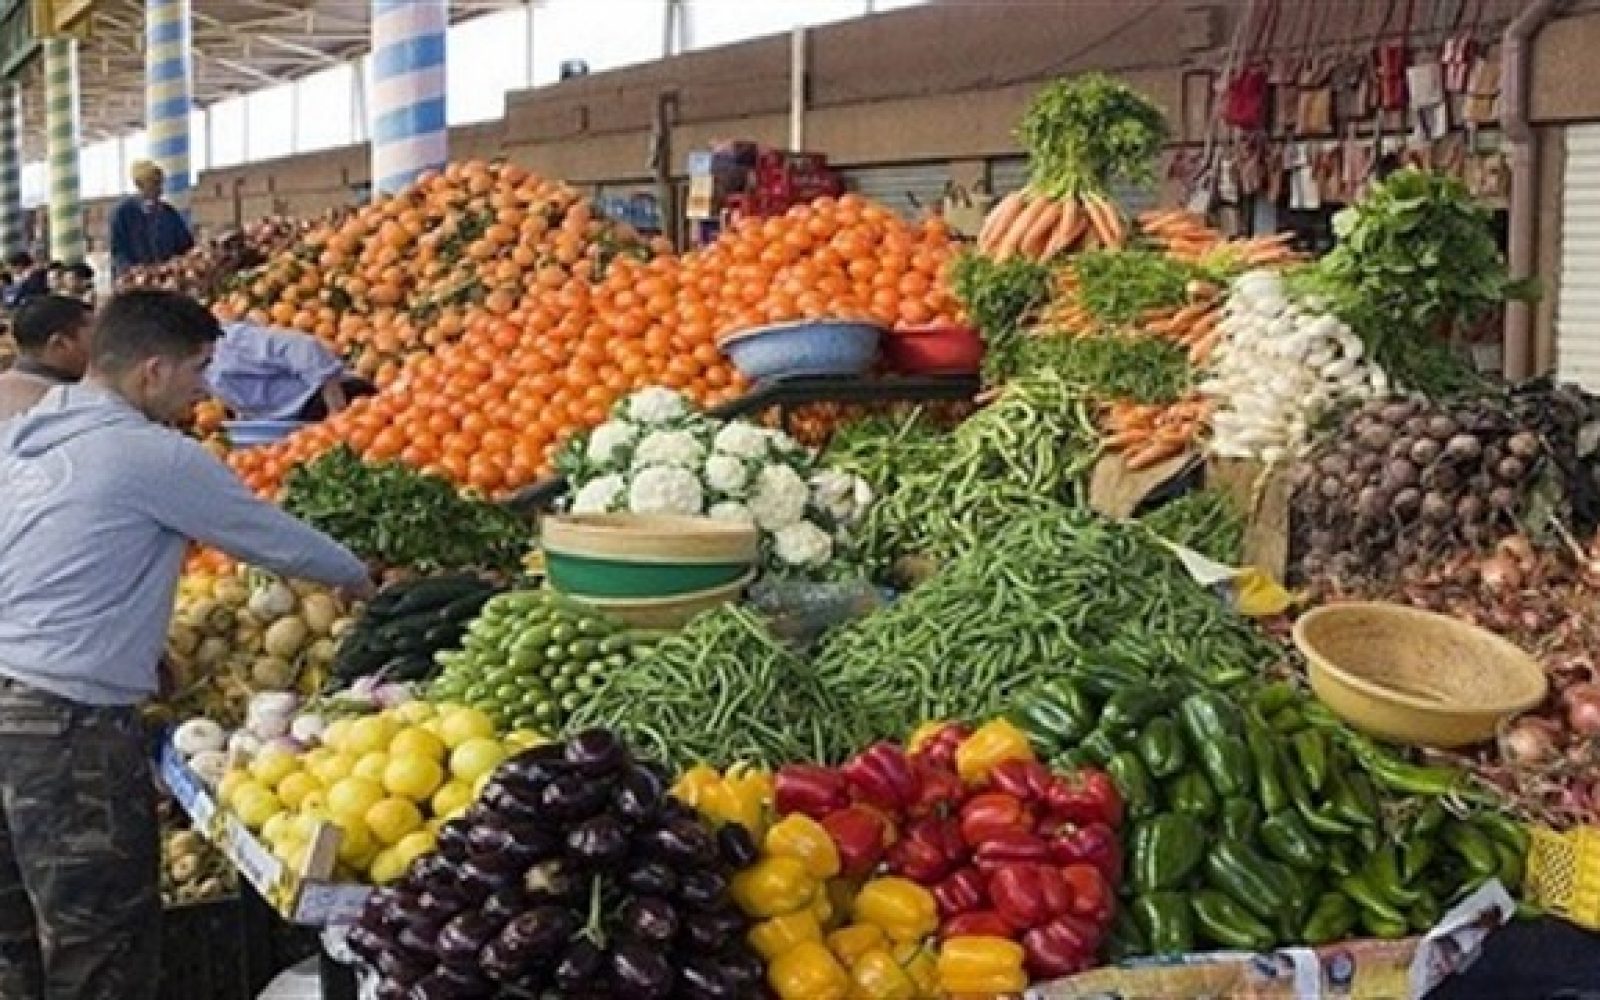  الخضروات والفاكهة فى الأسواق 